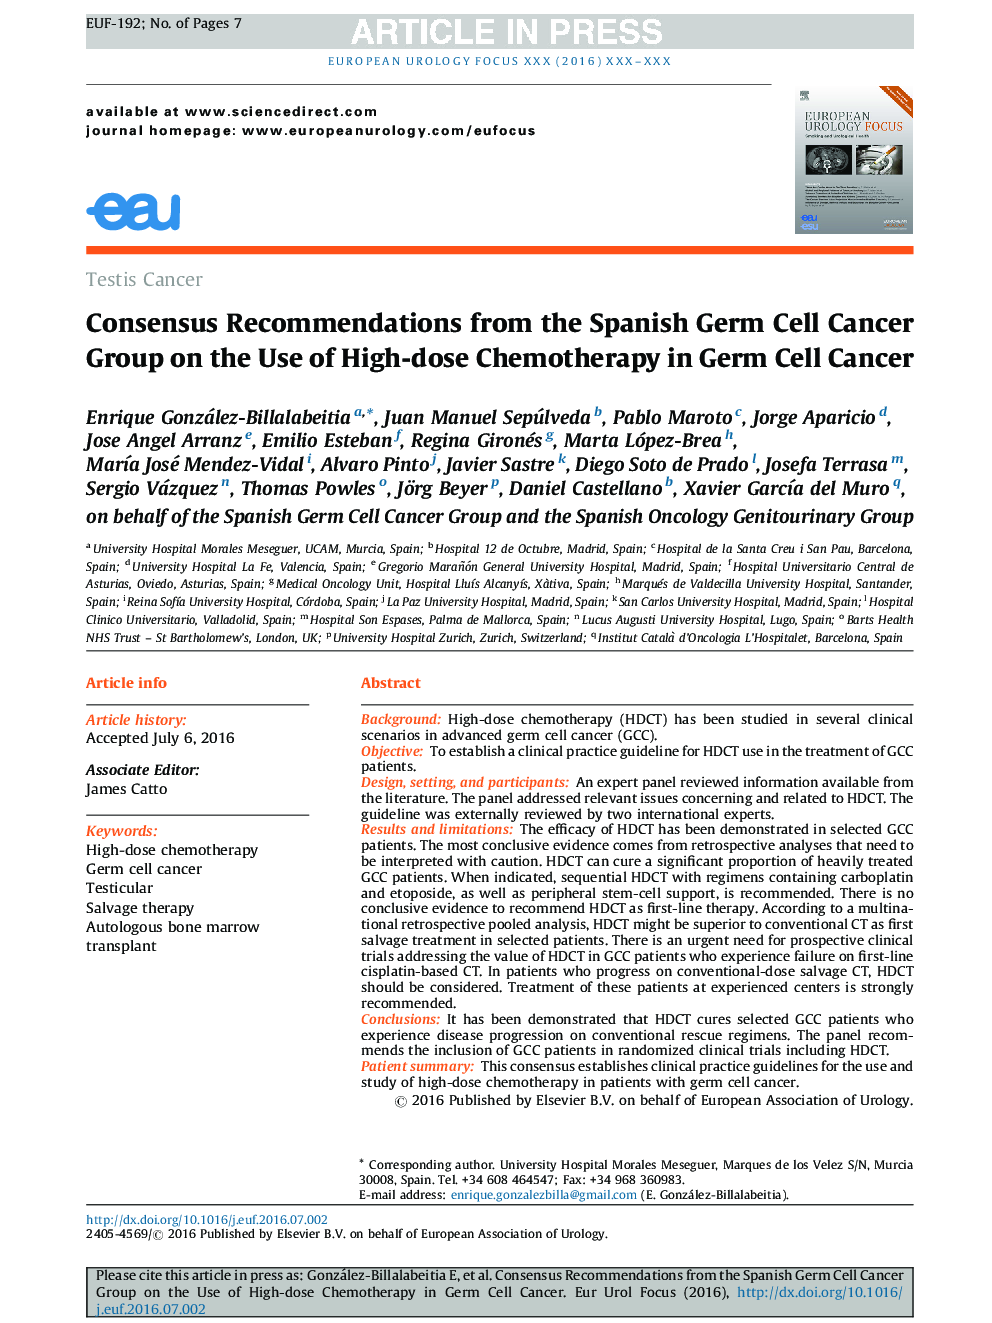 توصیه های انسانی از گروه سرطان سلول های بنیادی اسپانیا در مورد استفاده از دوز بالا شیمی درمانی در سرطان سلول های بنیادی 